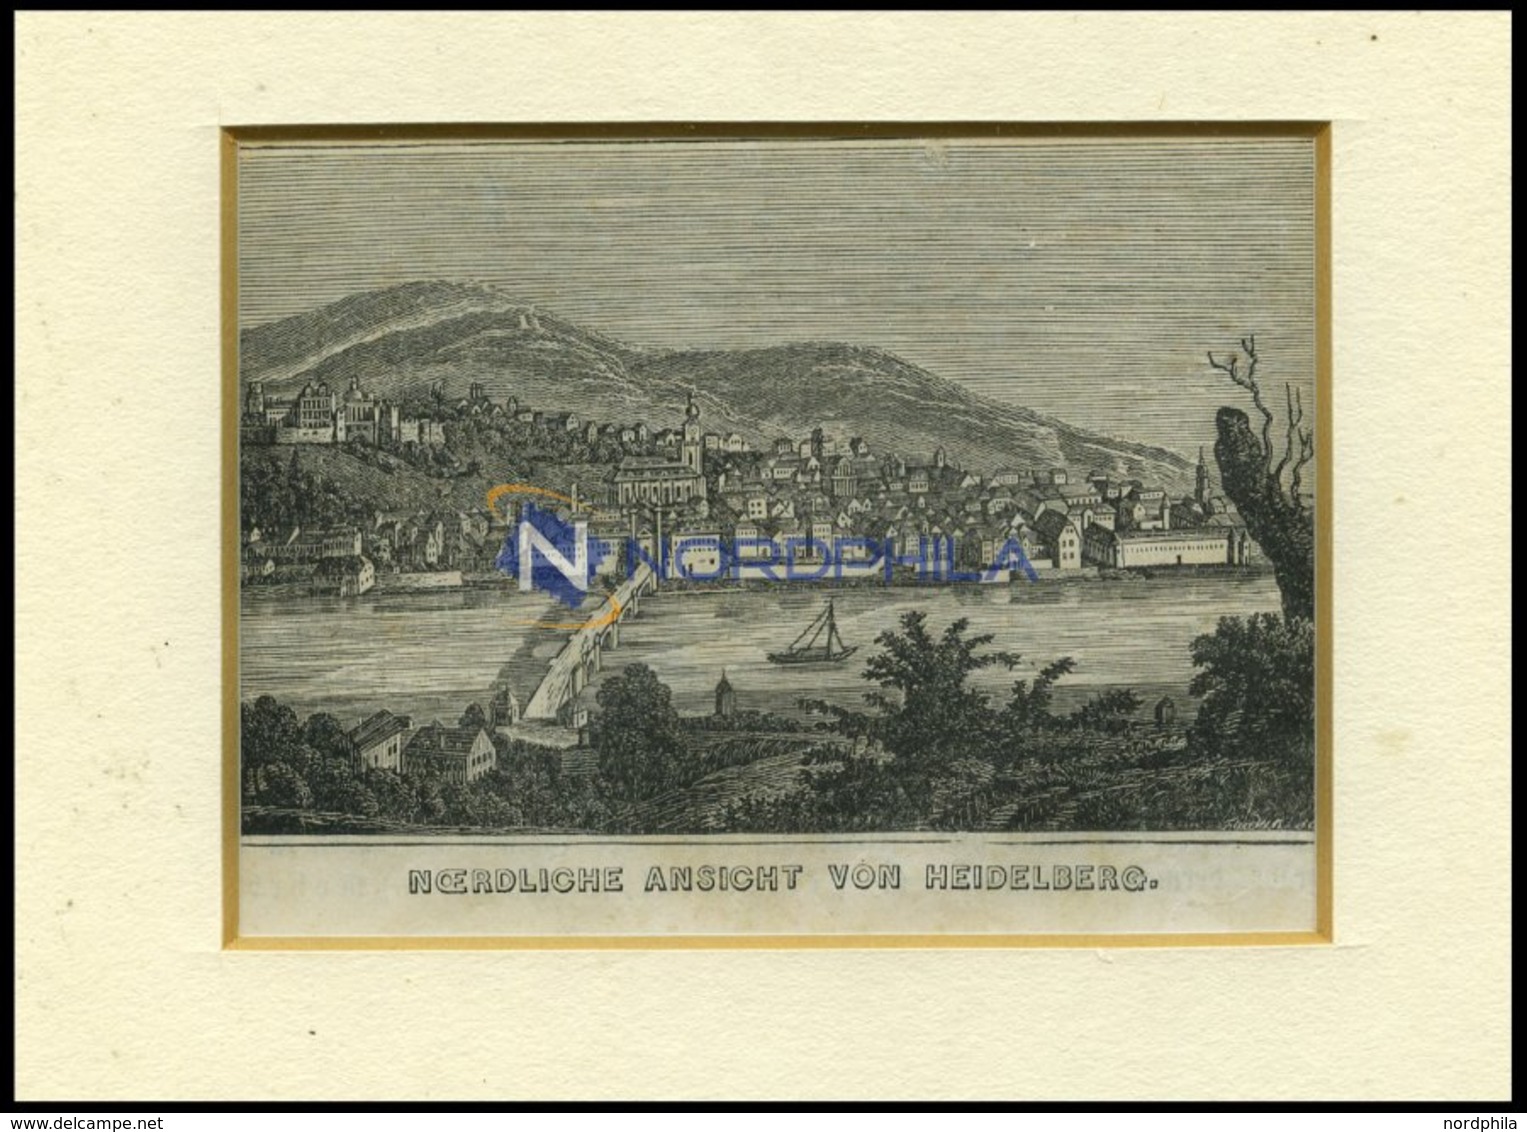 HEIDELBERG, Nördliche Gesamtansicht, Holzstich Von Heunisch Um 1840 - Lithographien